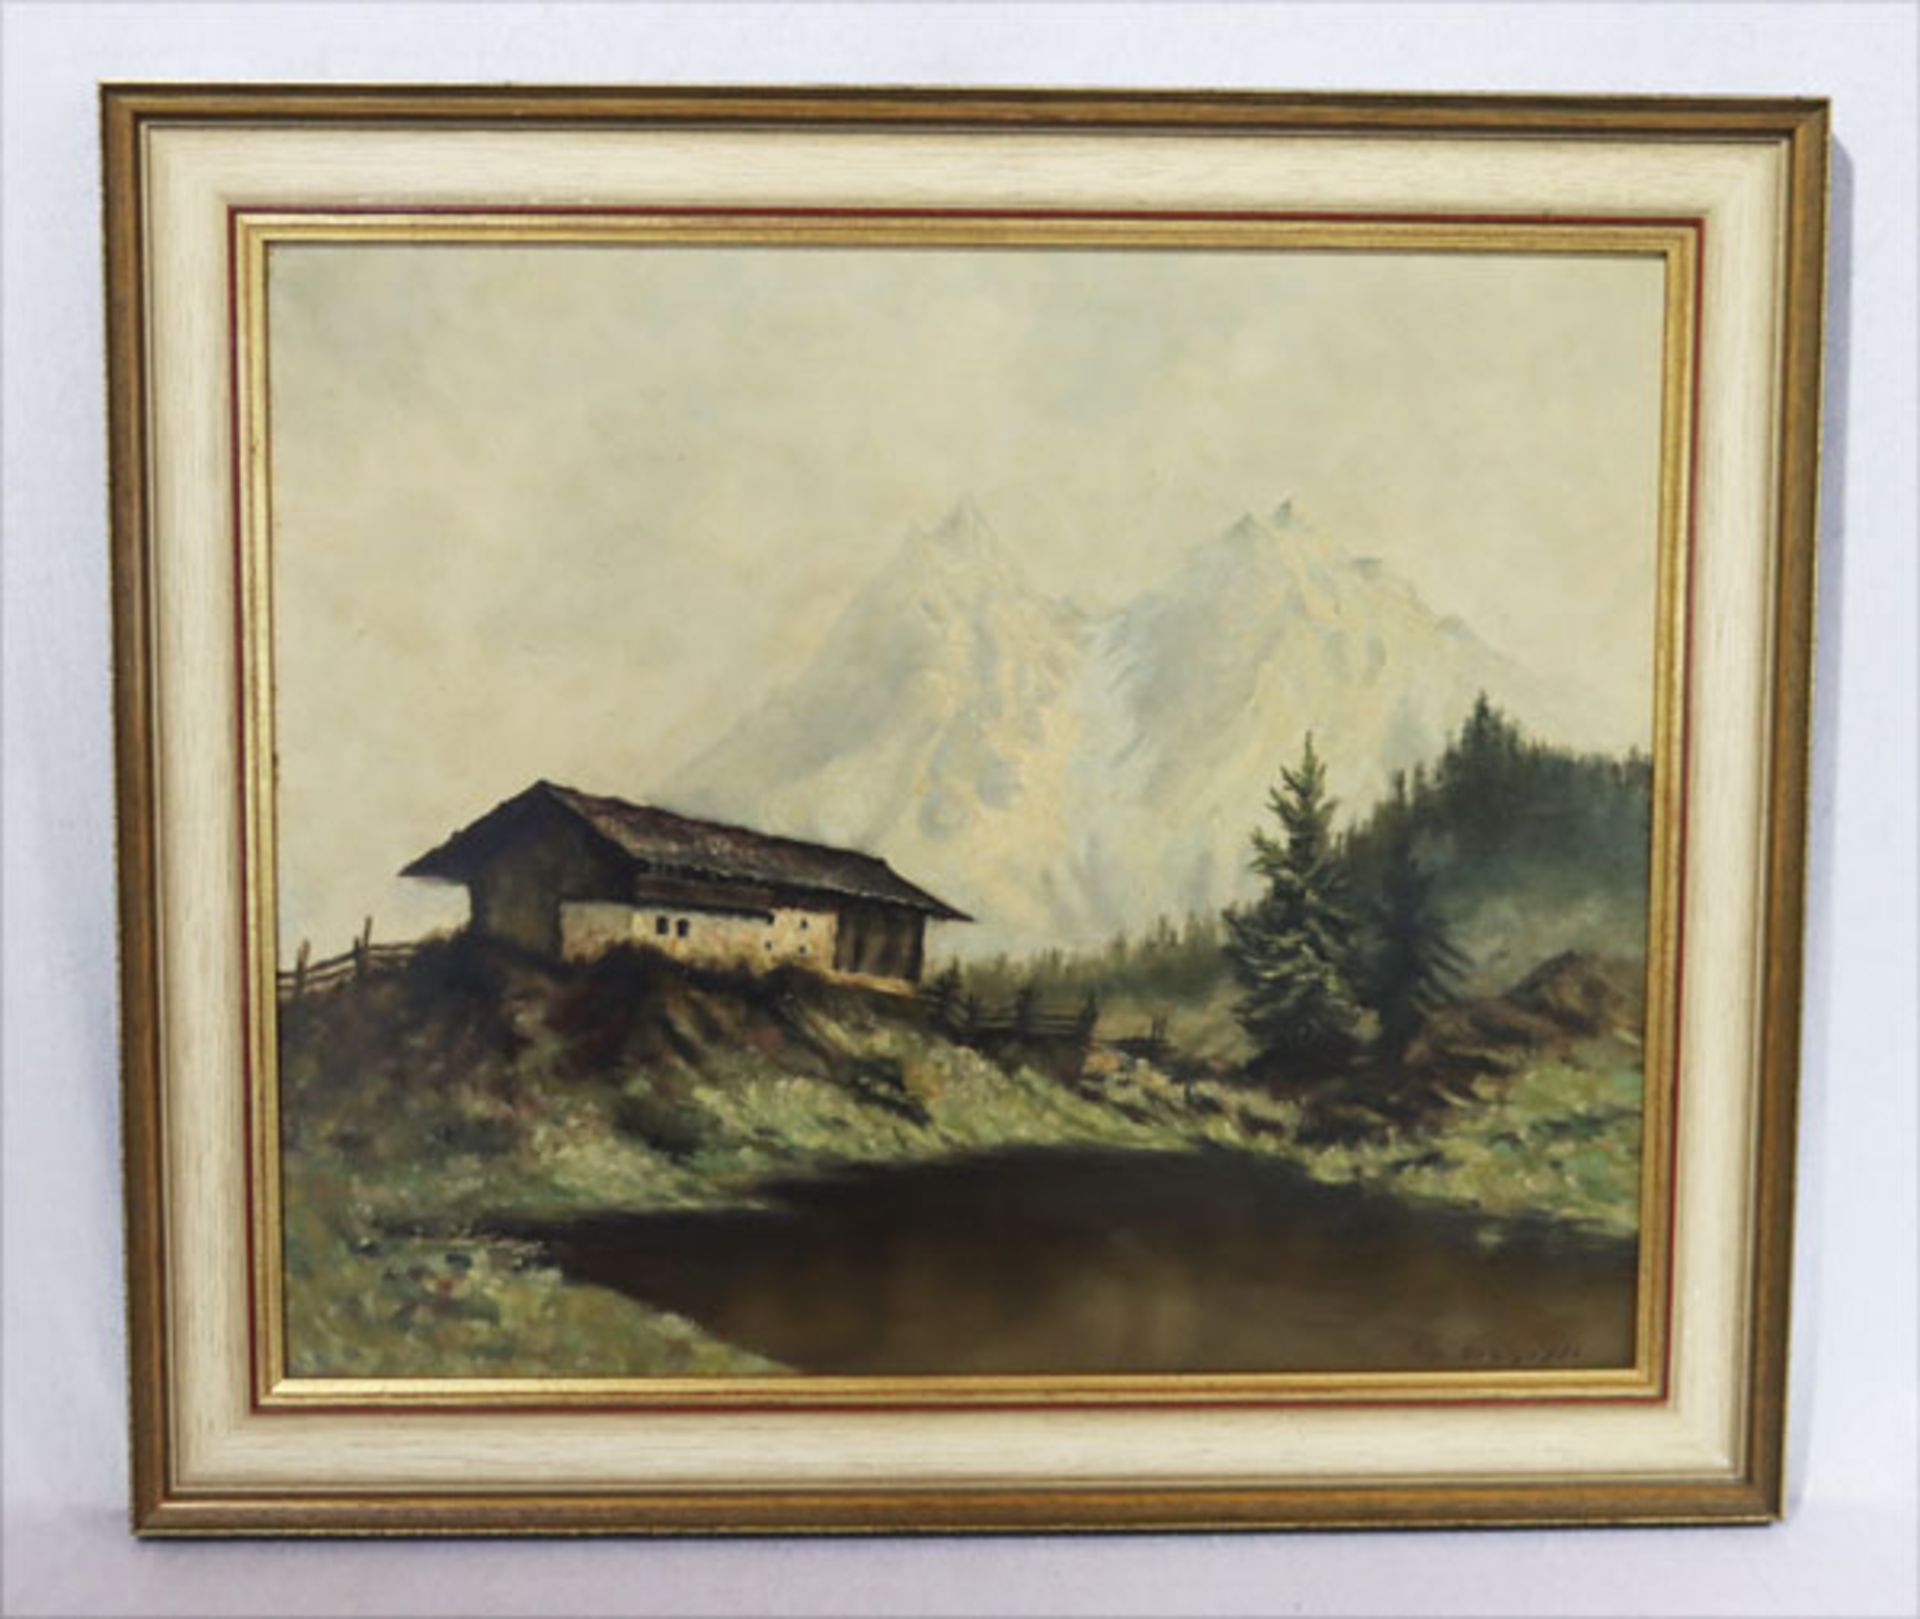 Gemälde ÖL/Hartfaser 'Bauernhaus im Hochgebirge', bez. Kop. Schöffl, gerahmt, incl. Rahmen 60 cm x